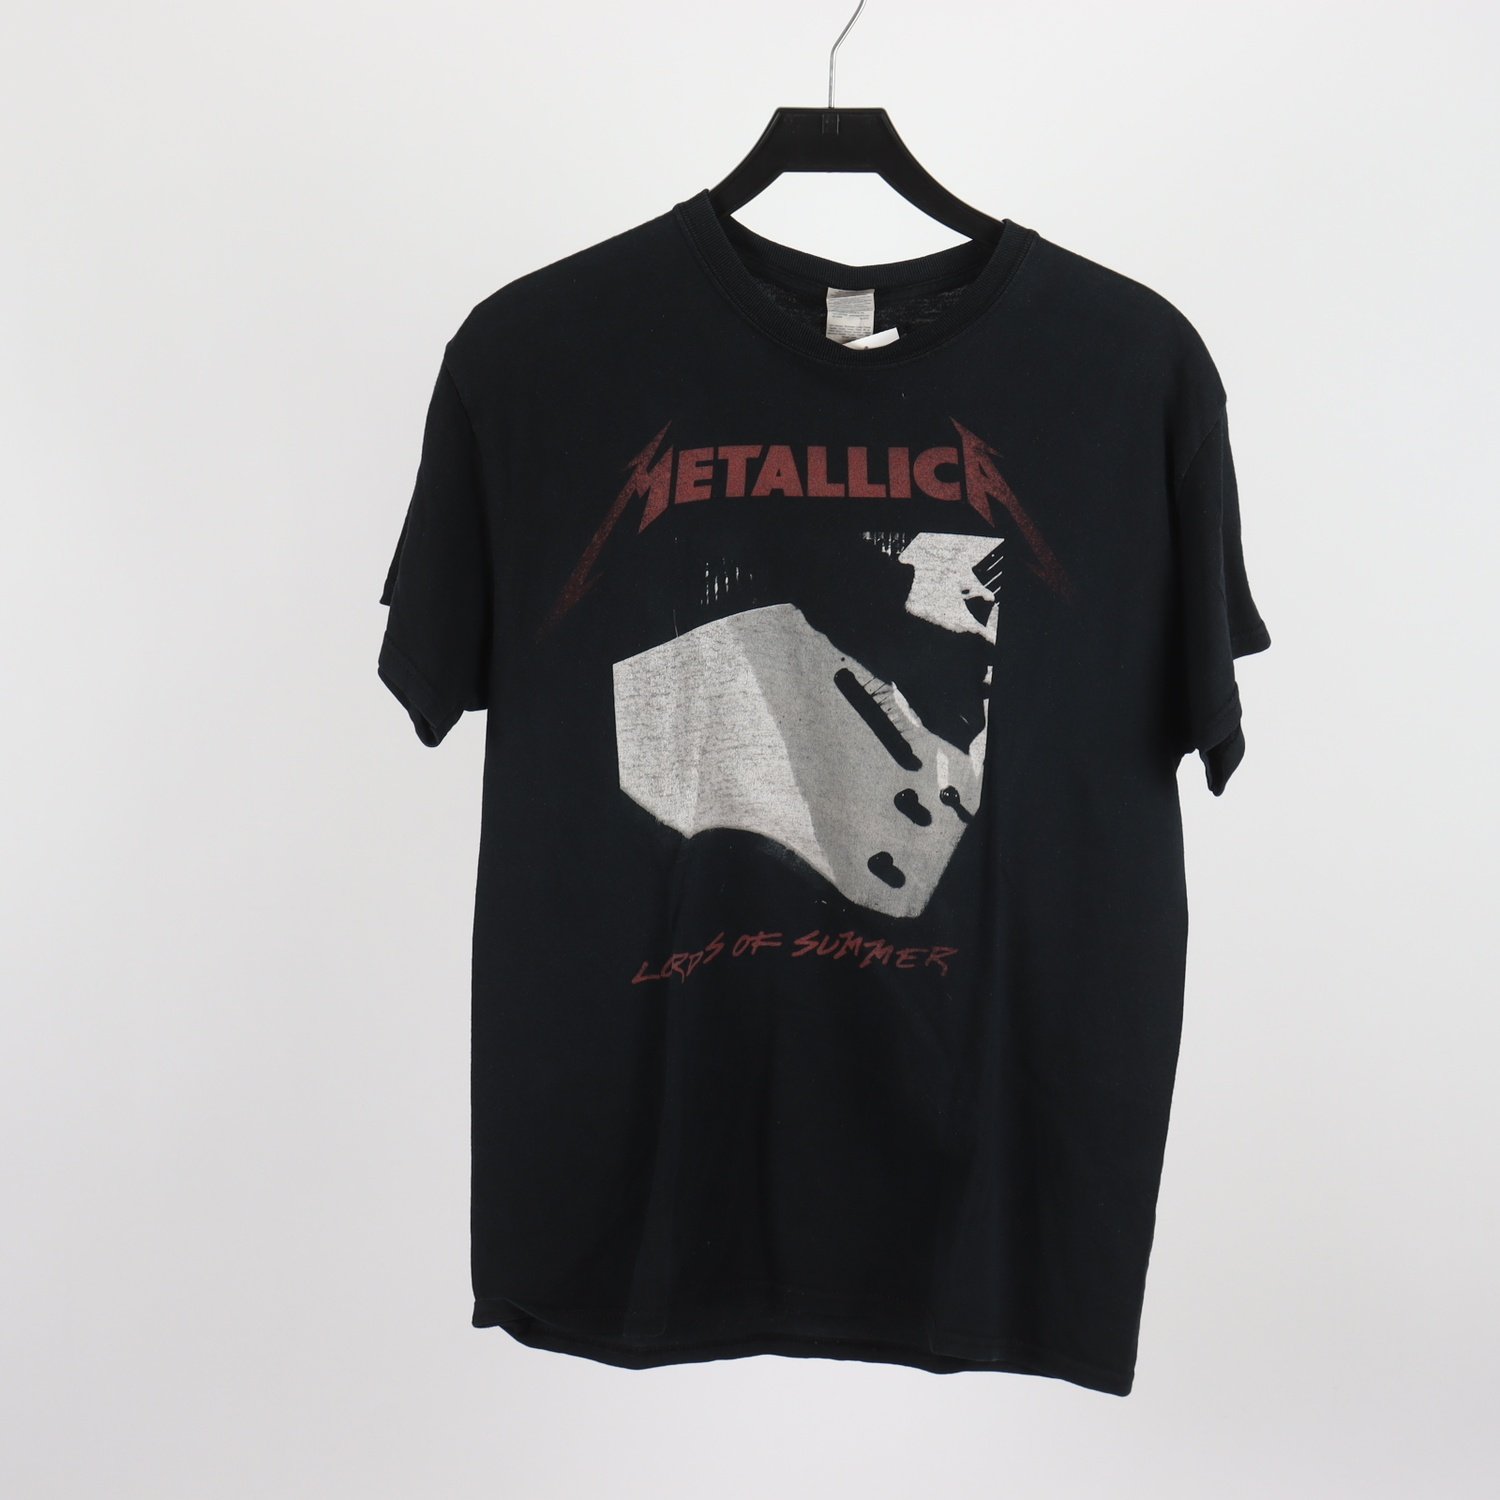 T-shirt, Metallica Lords of summer 2015, svart, stl. M